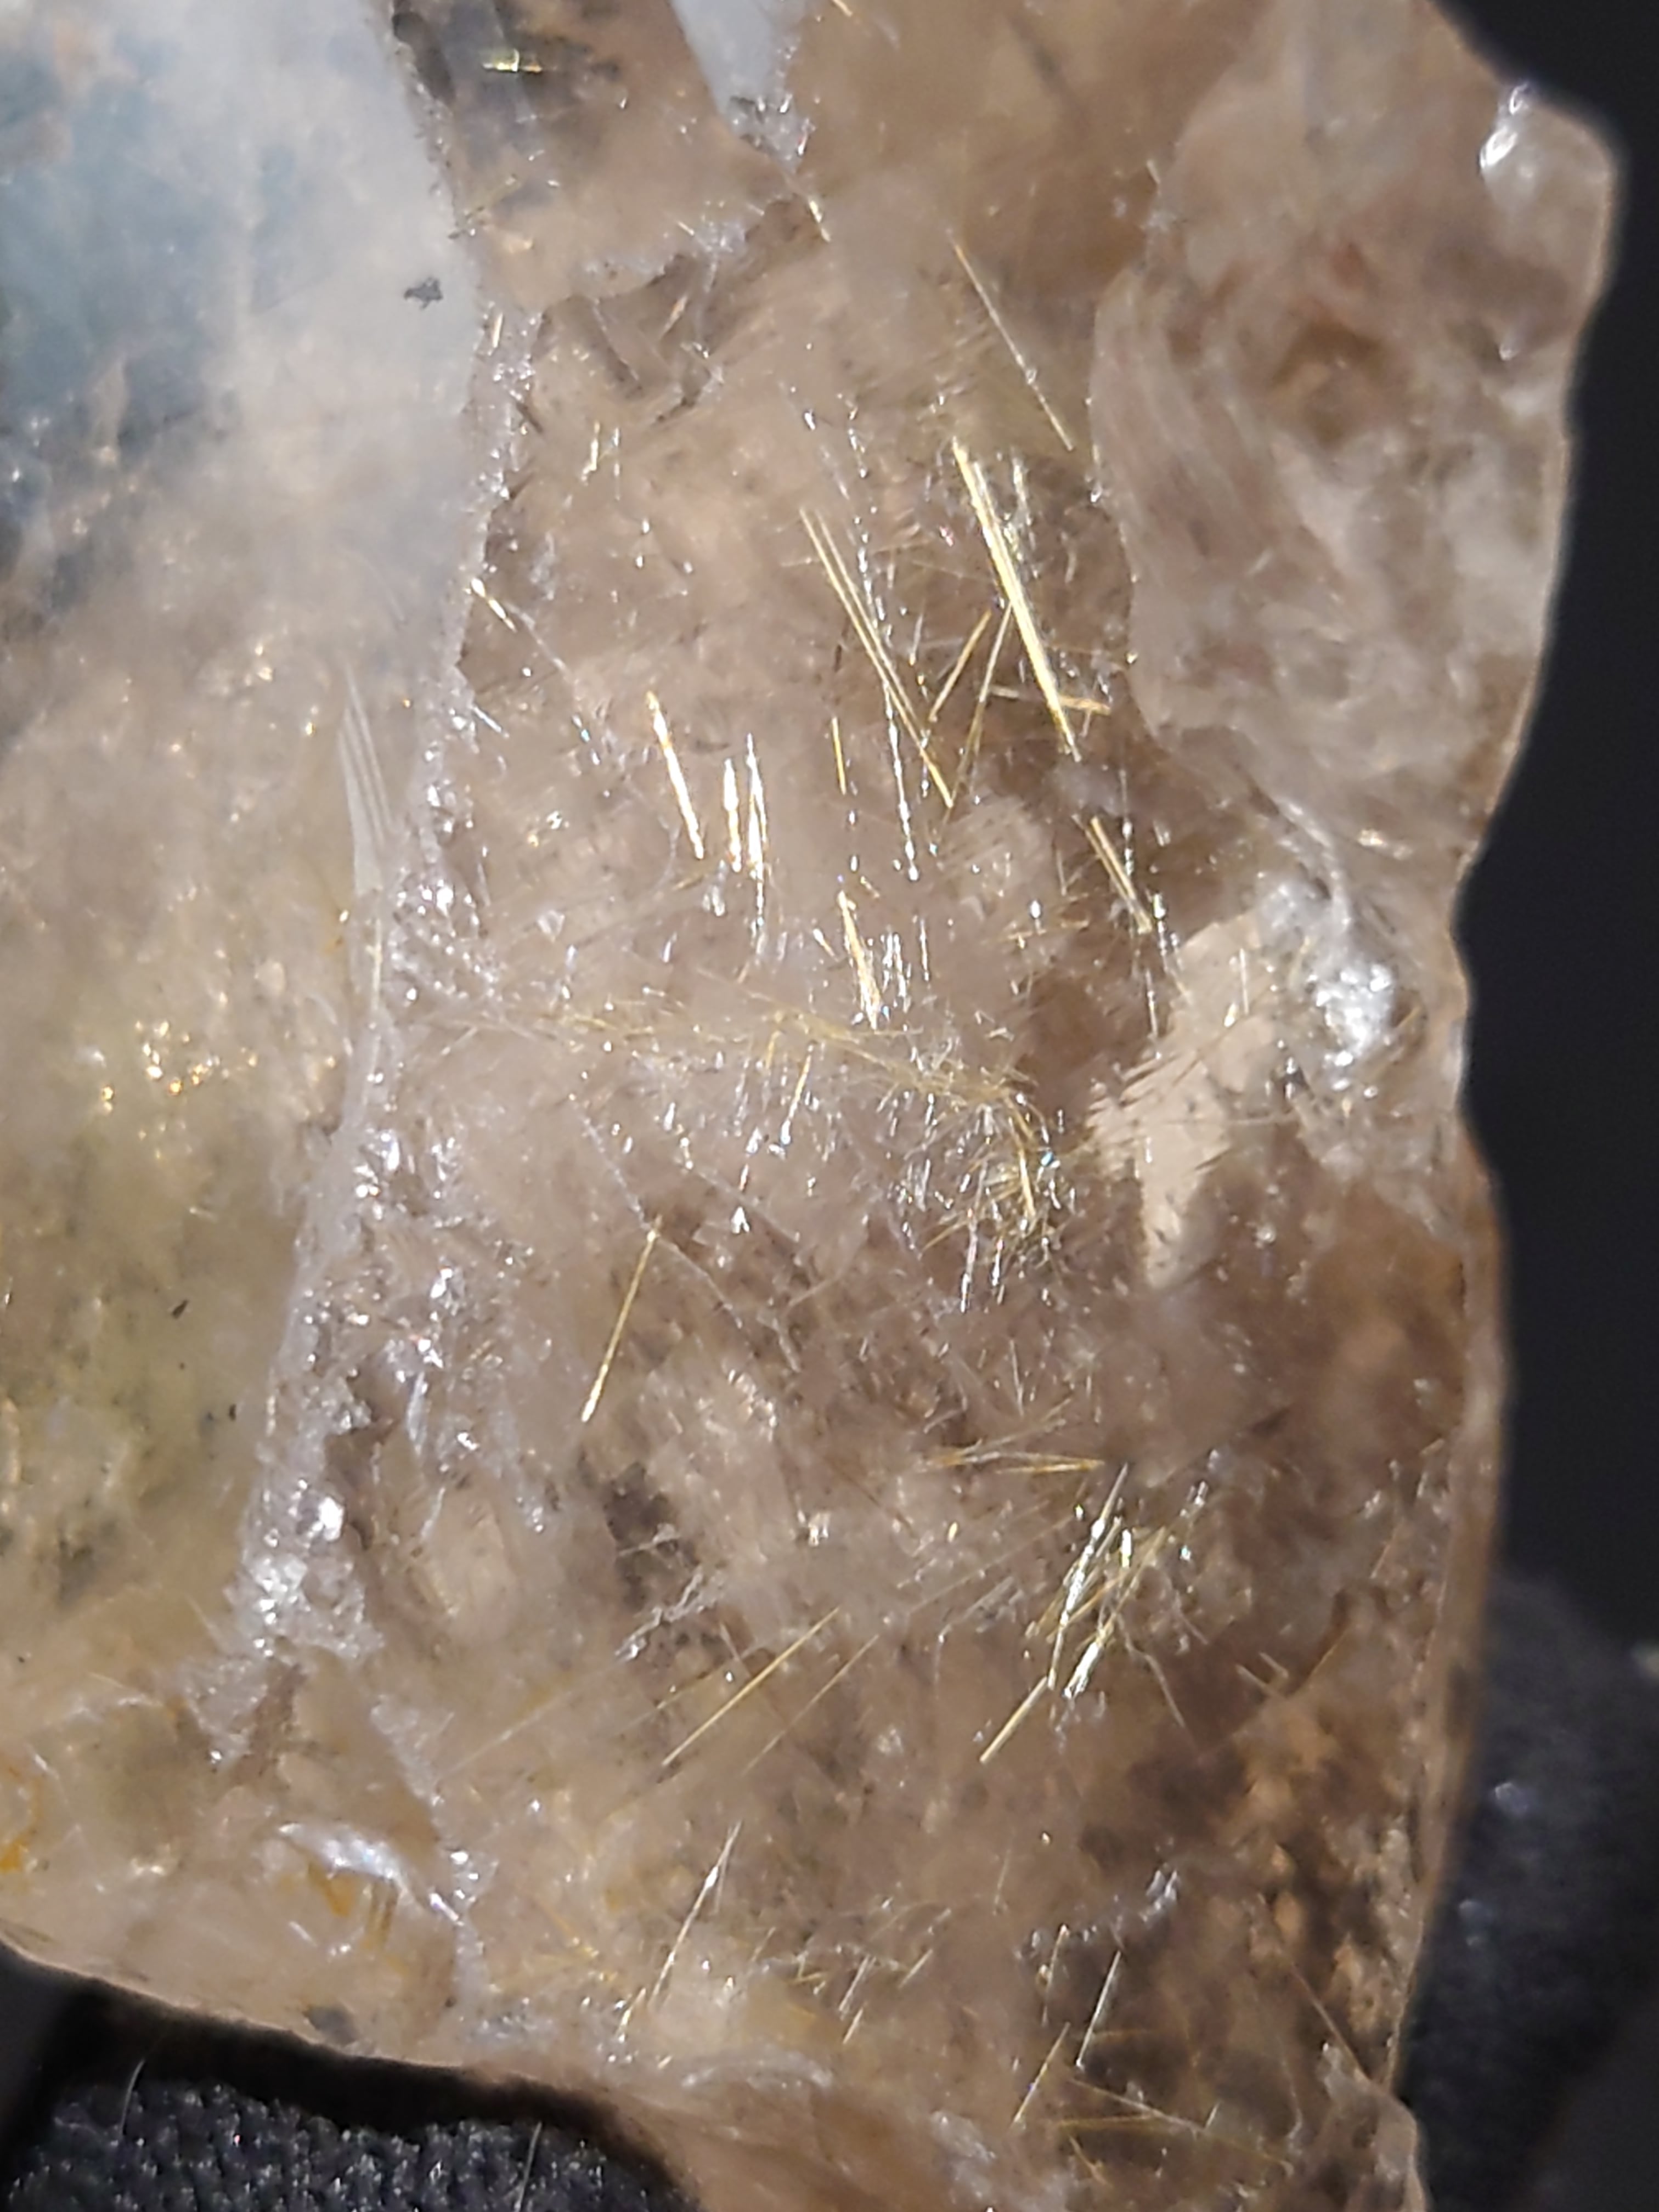 スモーキークォーツ(煙水晶)/ルチル(金紅石) ラフ R4-891 | 石や